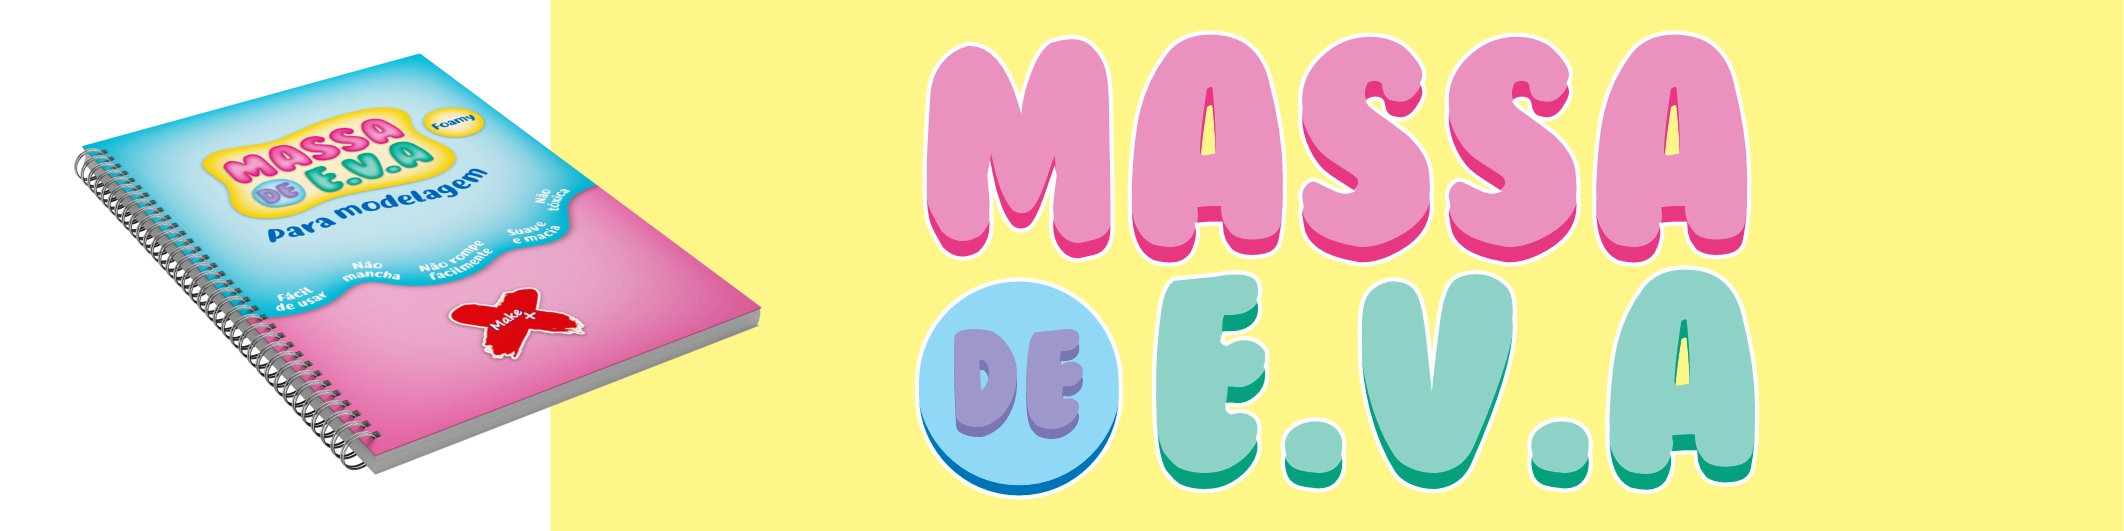 MASSA DE E.V.A